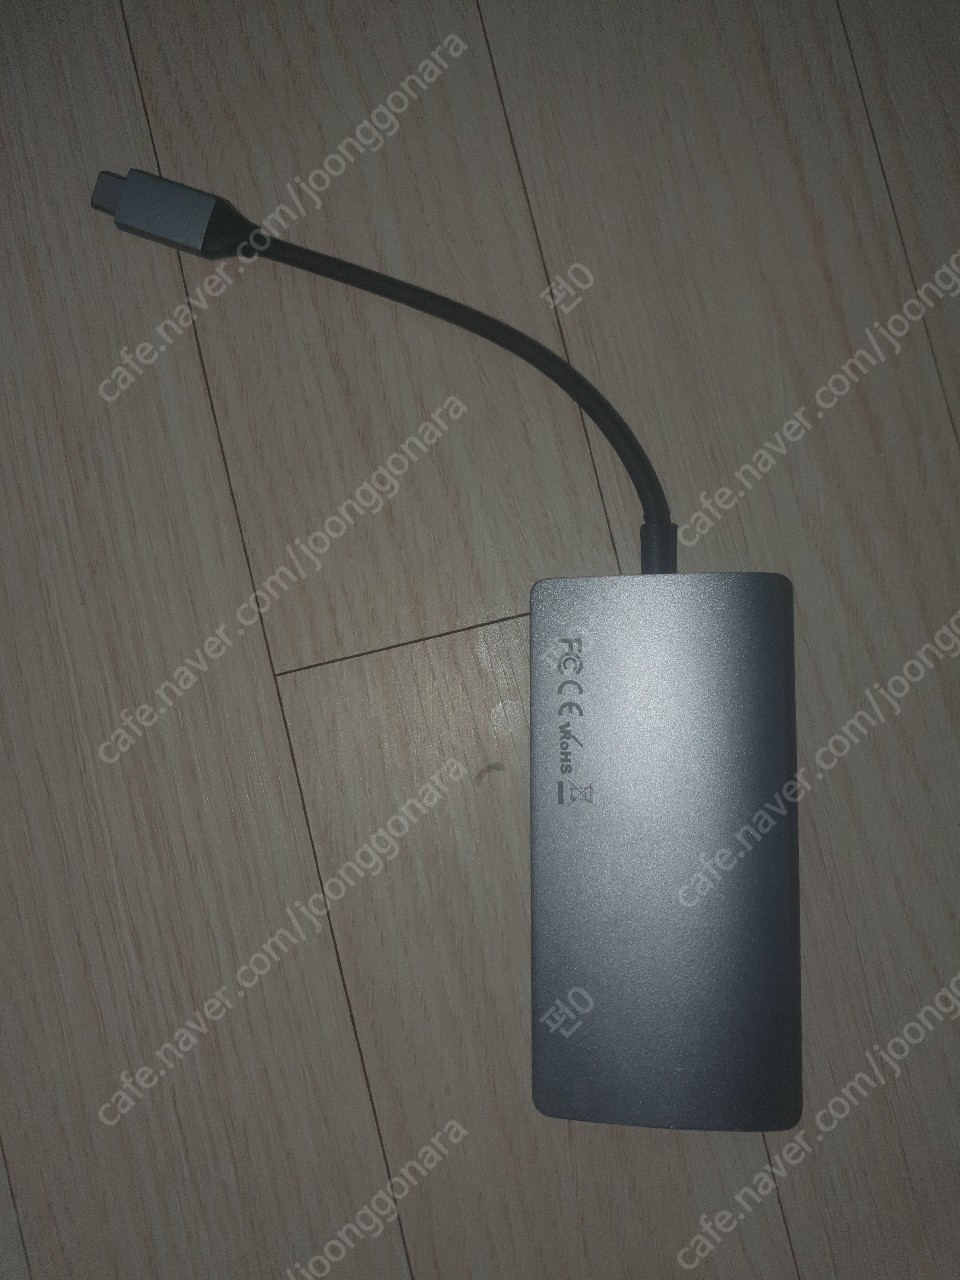 사테치 V2 (satechi v2) USB 허브 판매합니다